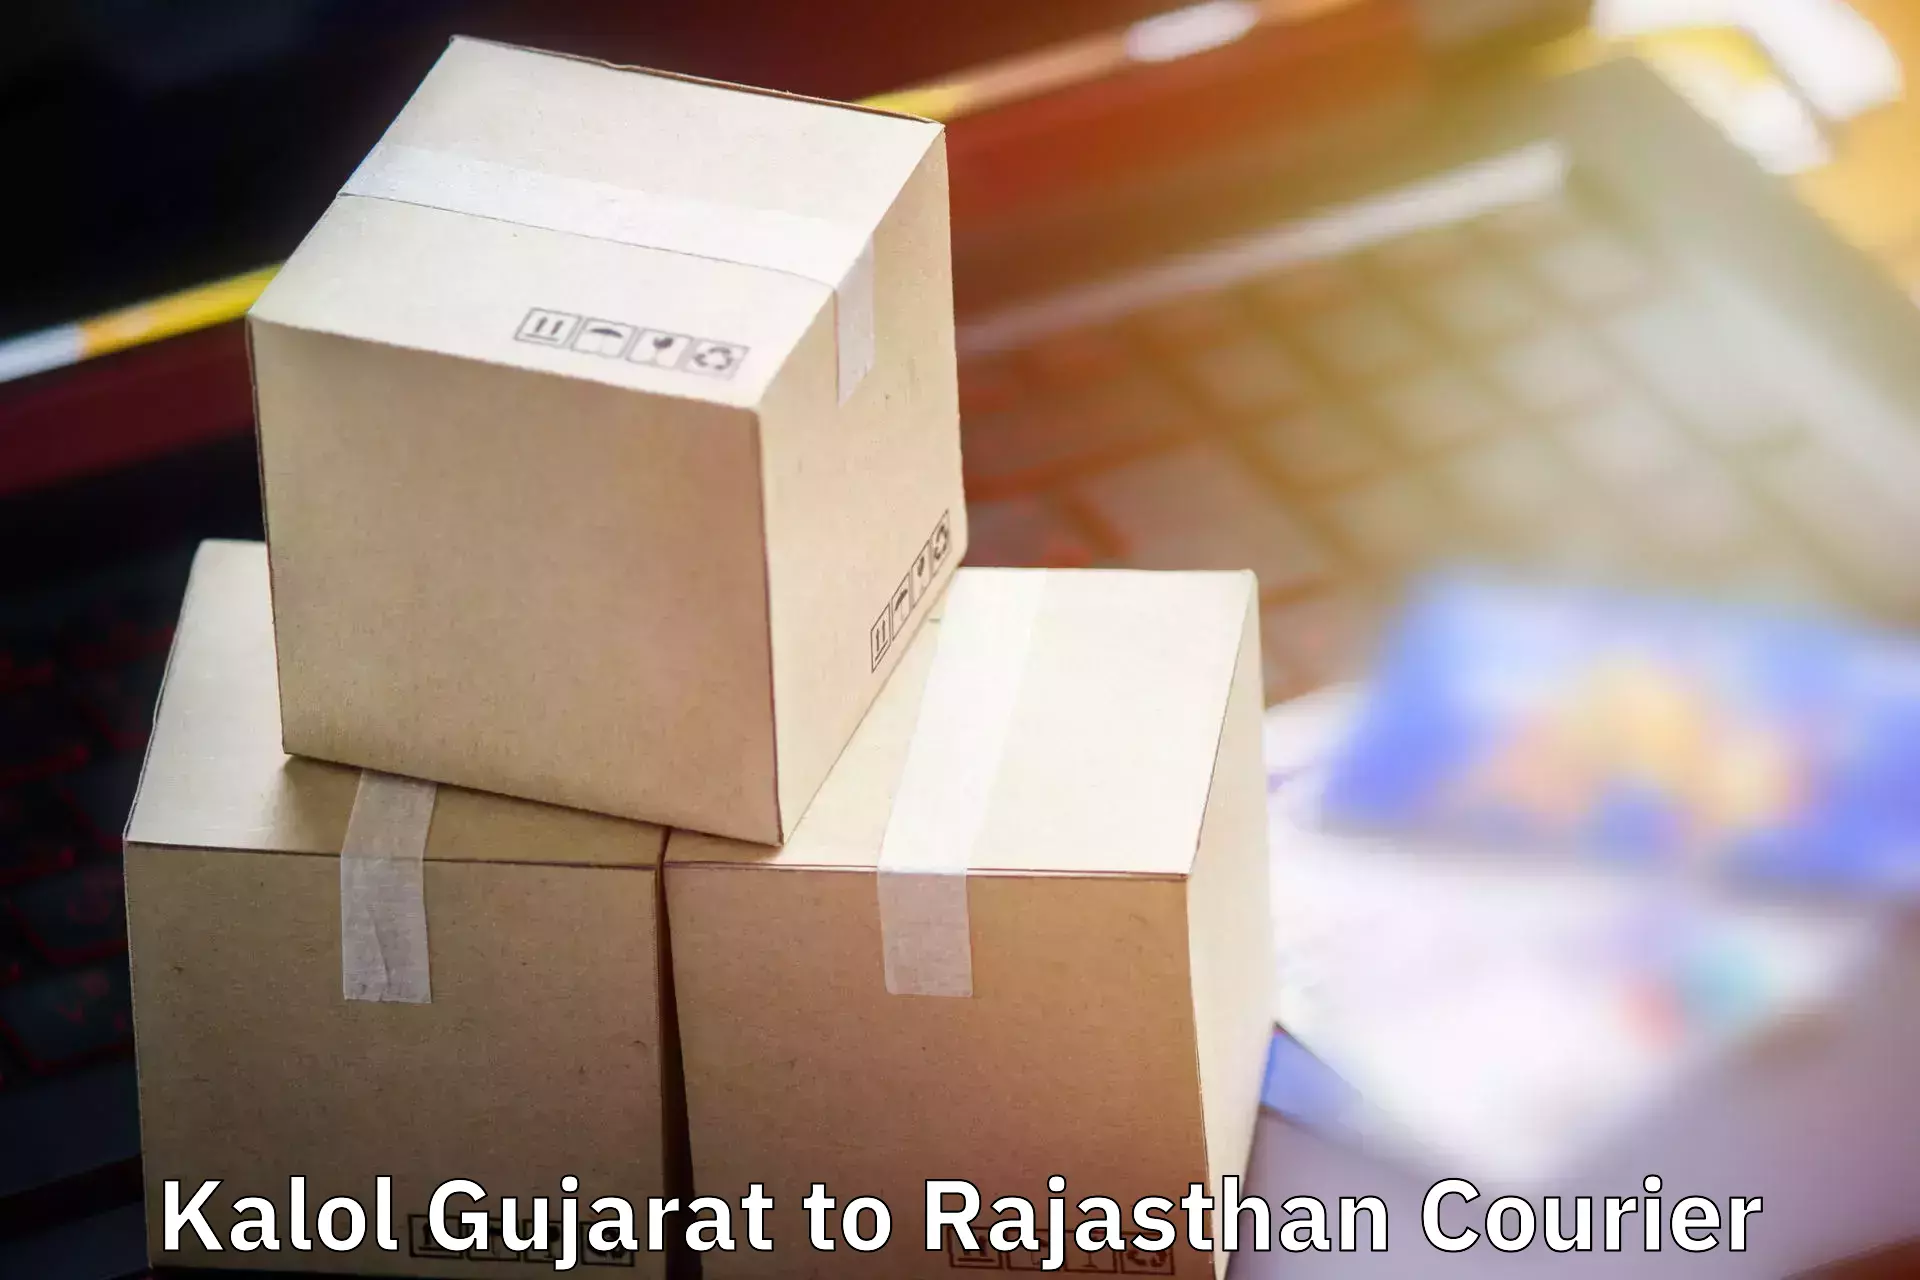 Luggage shipping service Kalol Gujarat to Yathalakunta